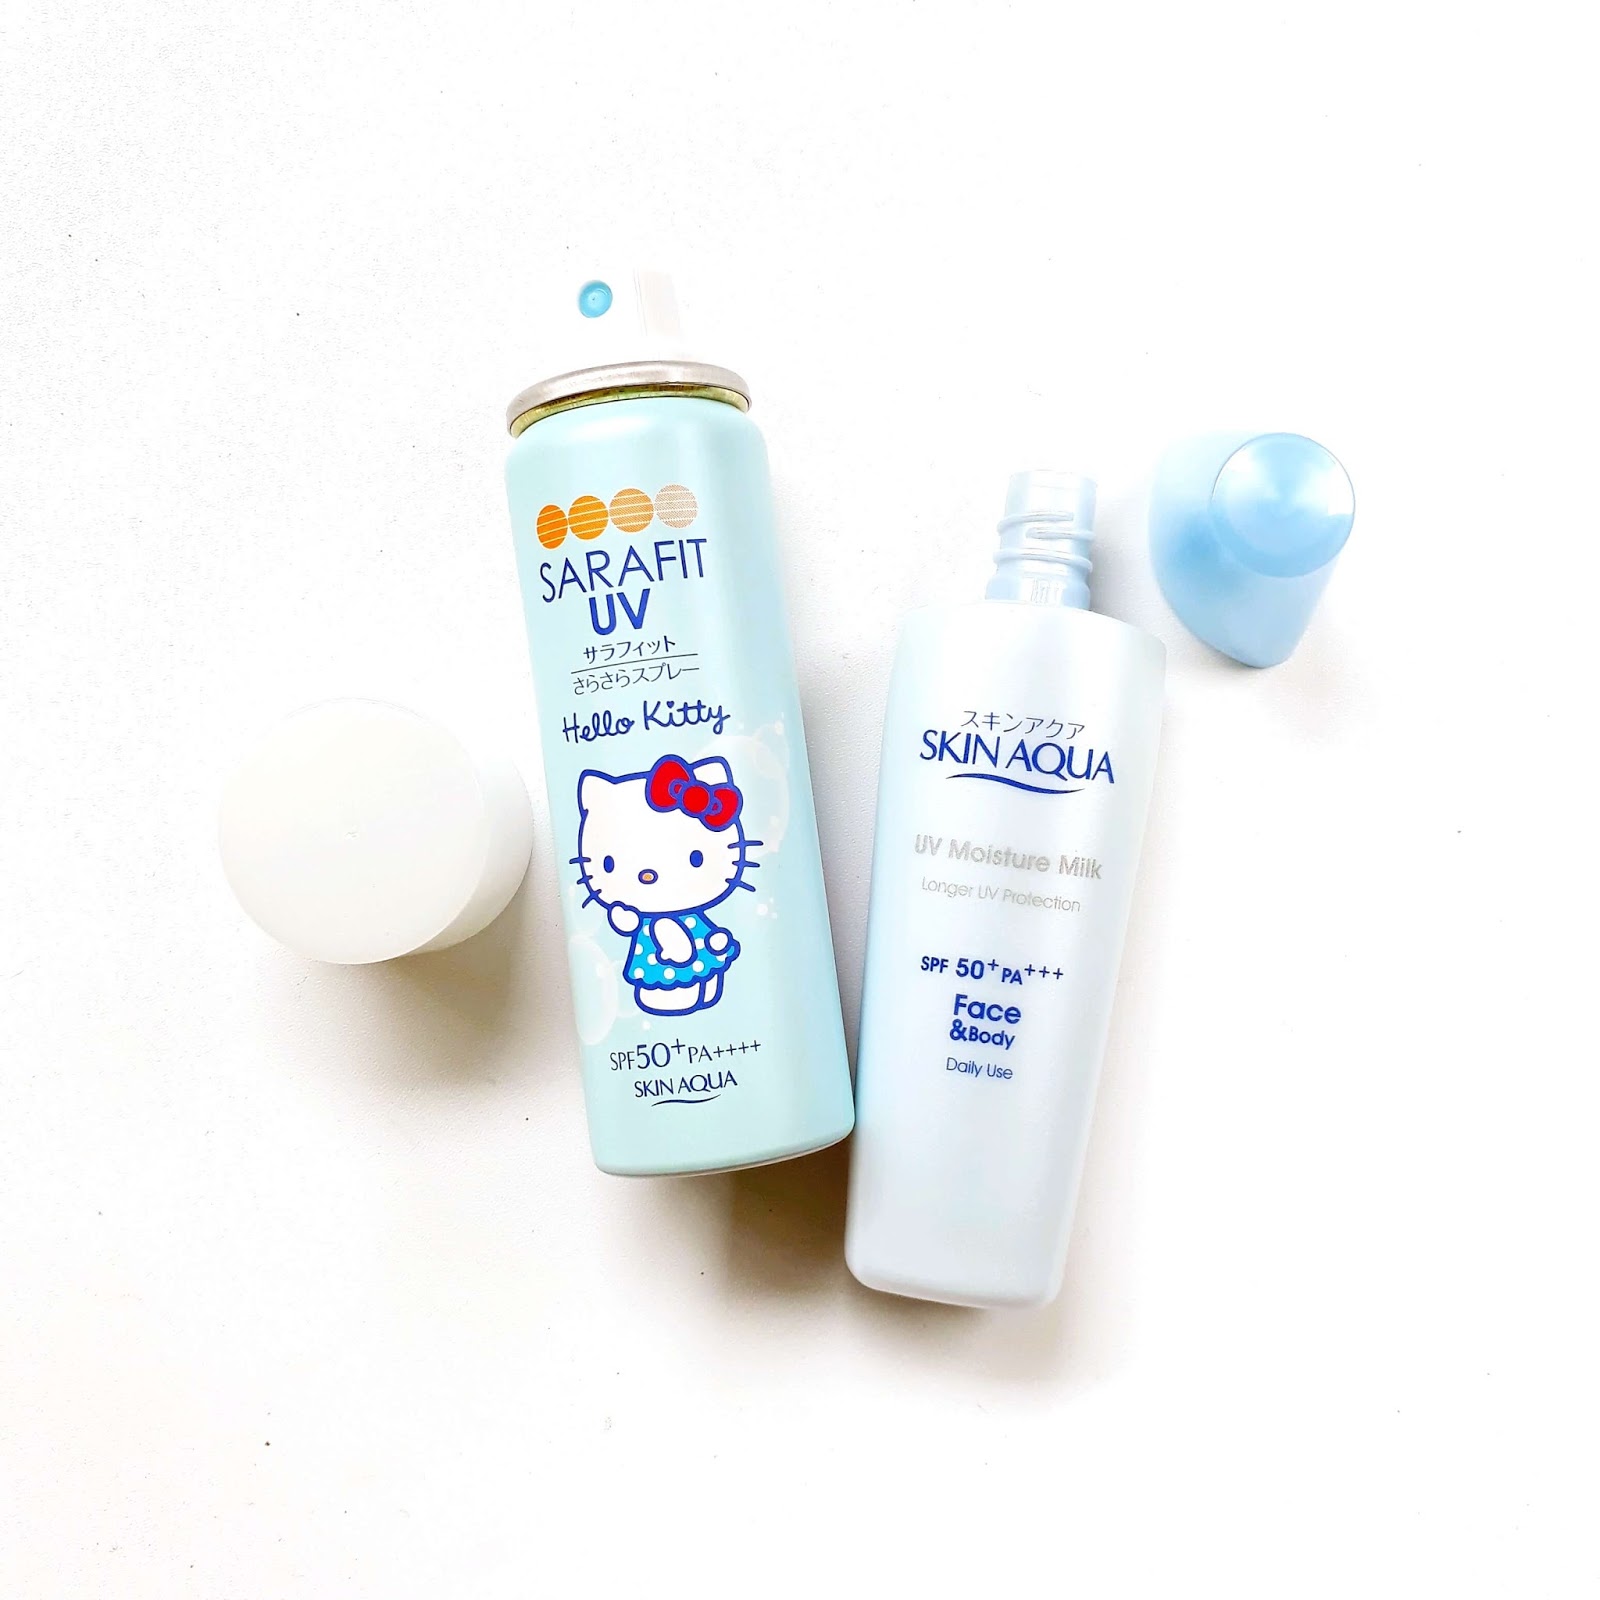 skin-aqua-uv-moisture-milk, review-skin-aqua, skin-aqua-sunscreen, sunscreen-skin-aqua-spf-50